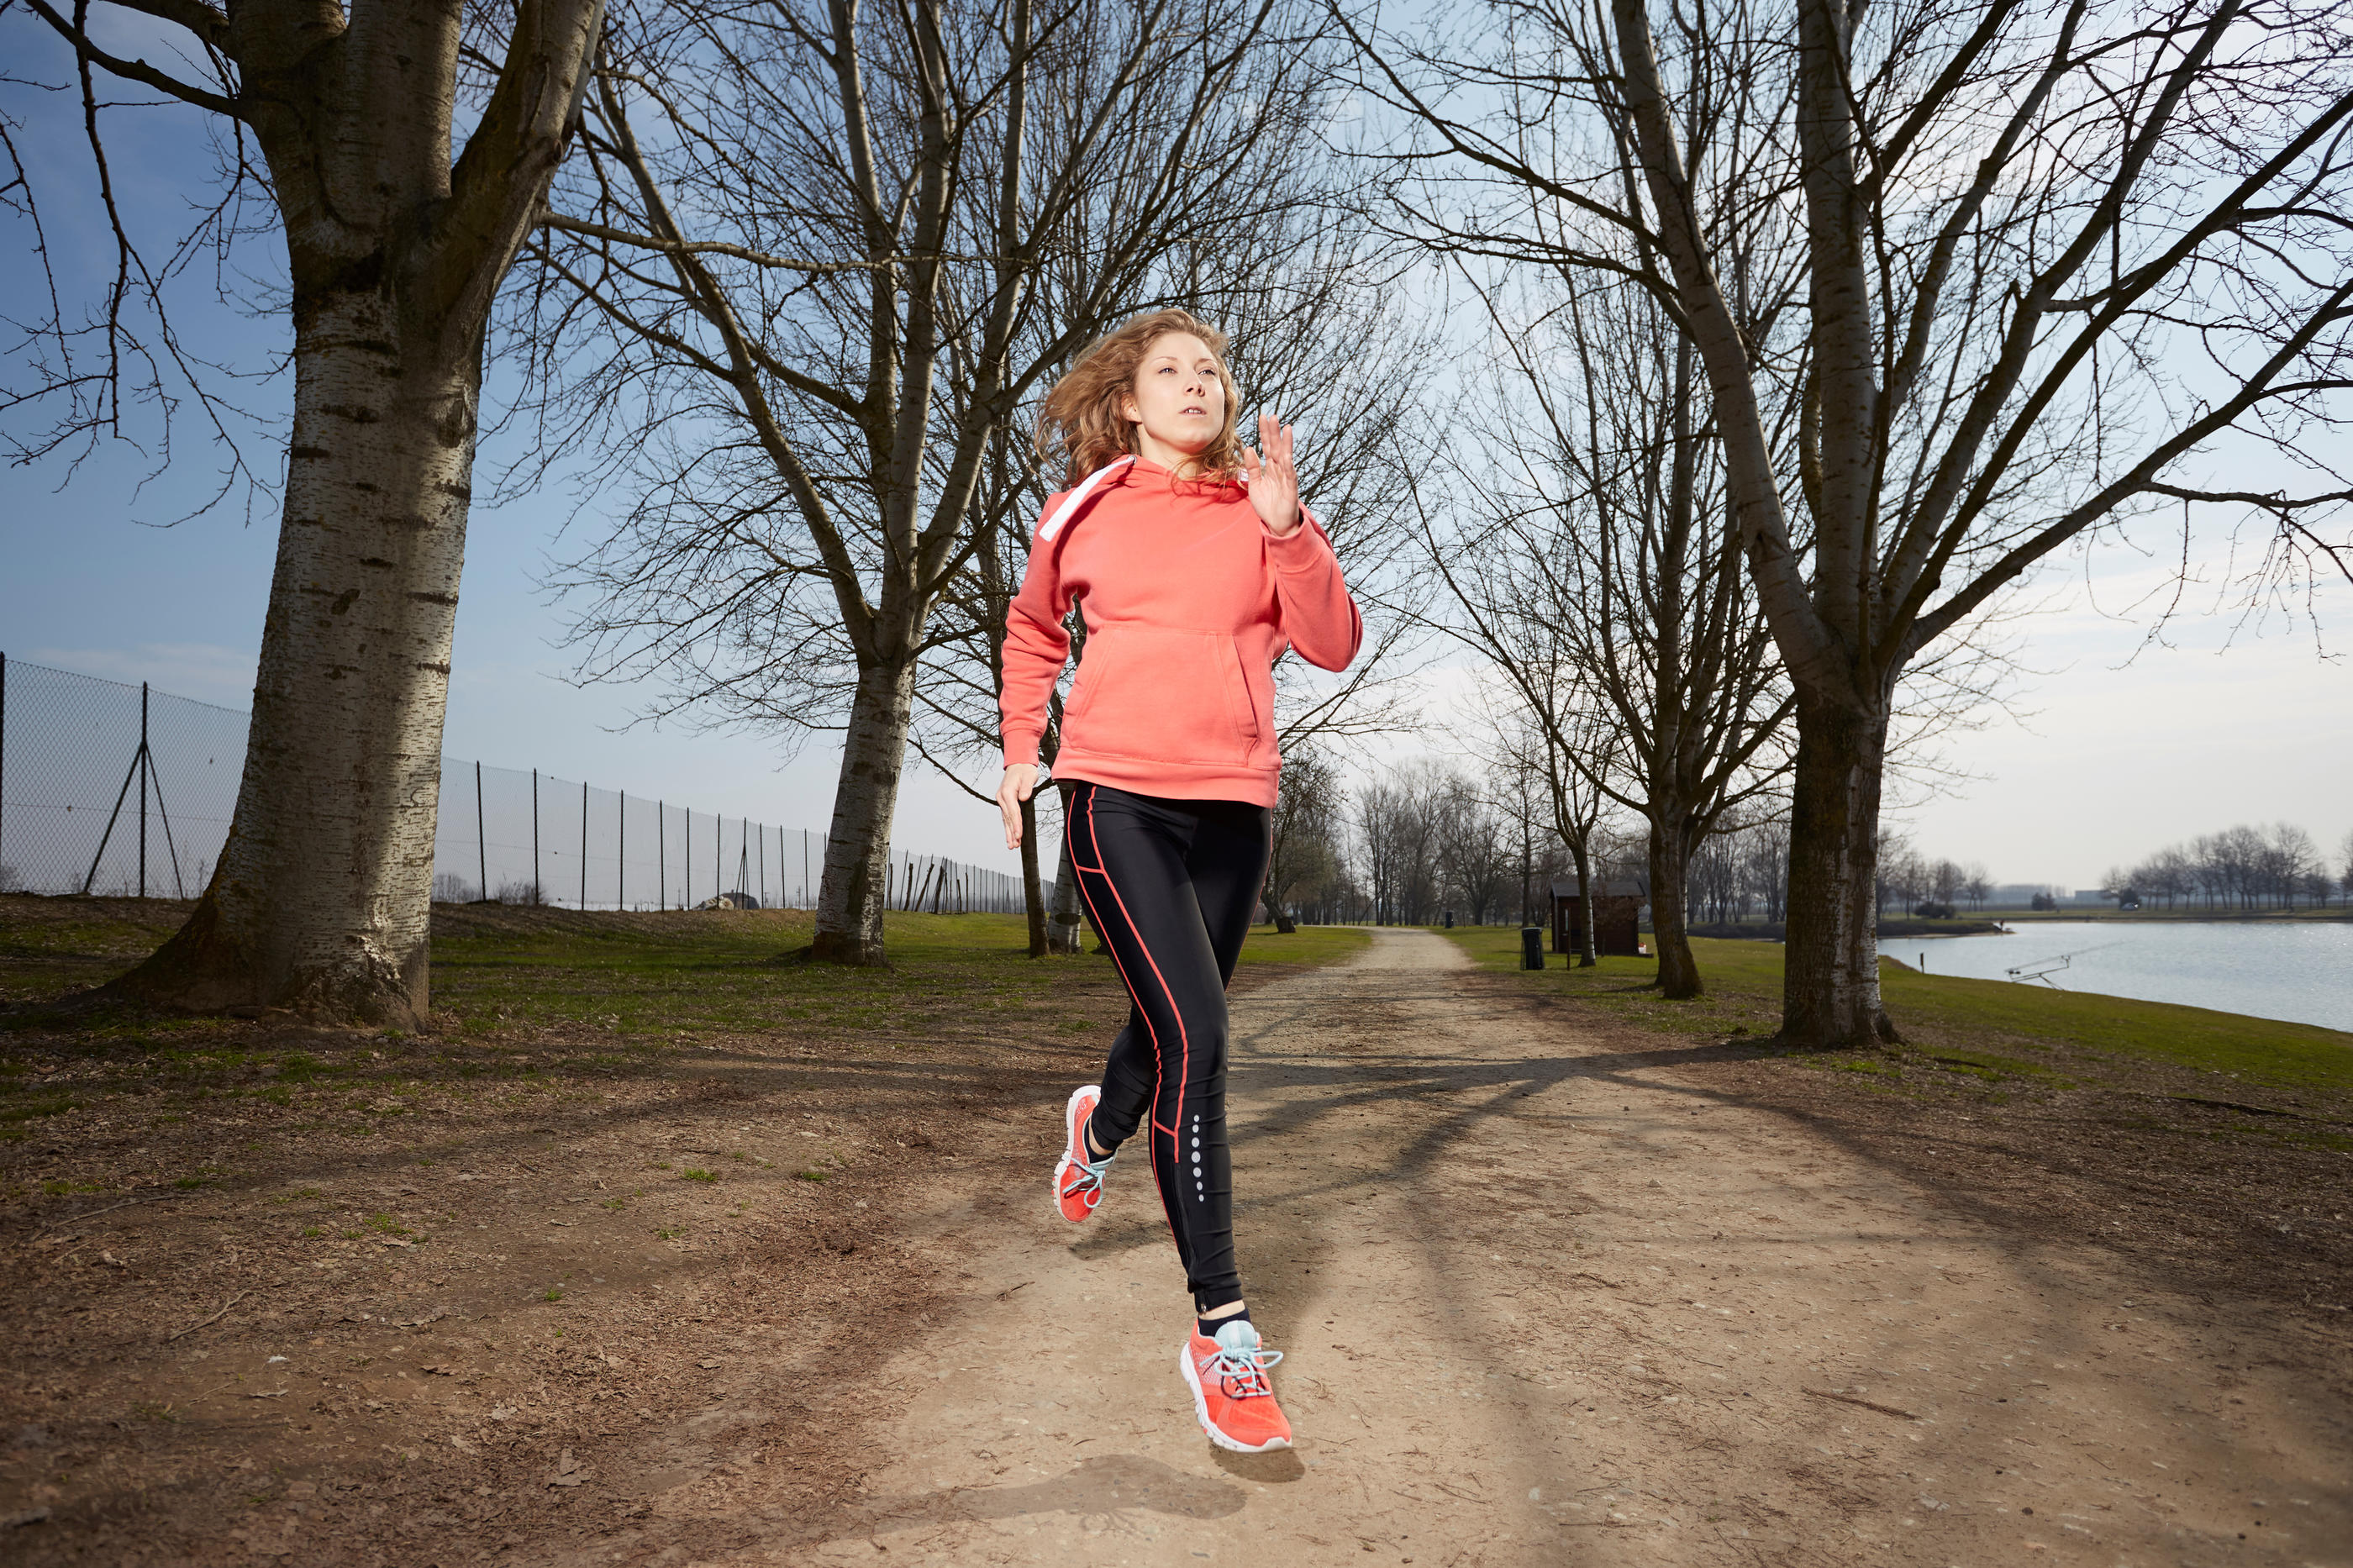 La pratique du sport, notamment la course à pied, permet d'augmenter la densité osseuse ainsi que la masse musculaire. iStock